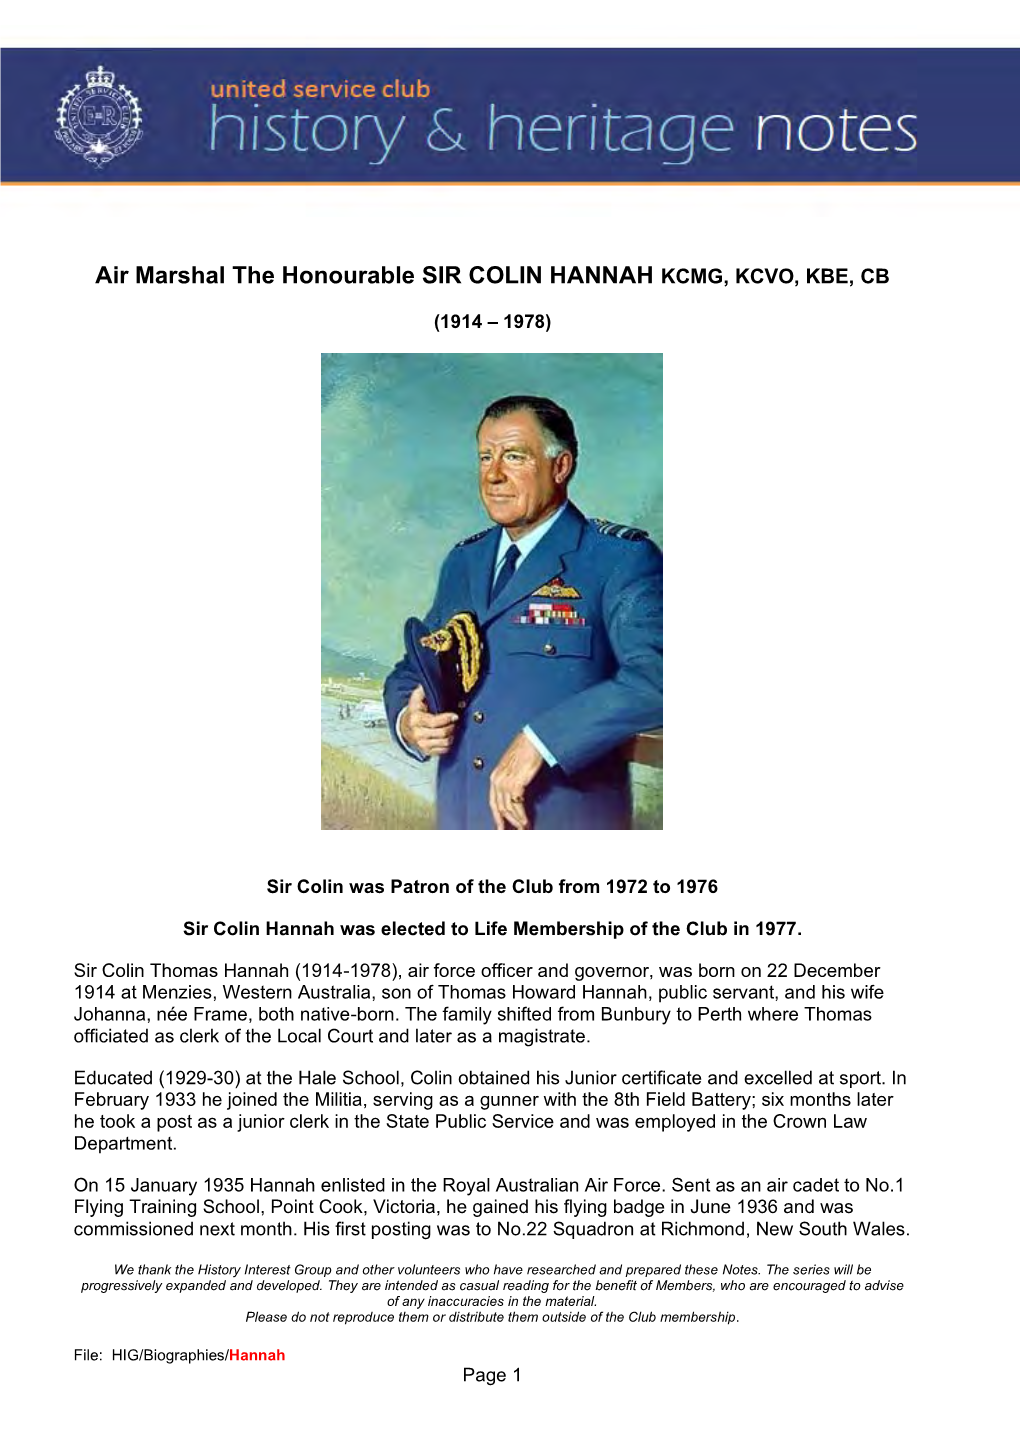 1976 Air Marshal the Honourable Sir Colin HANNAH KCMG, KCVO, KBE